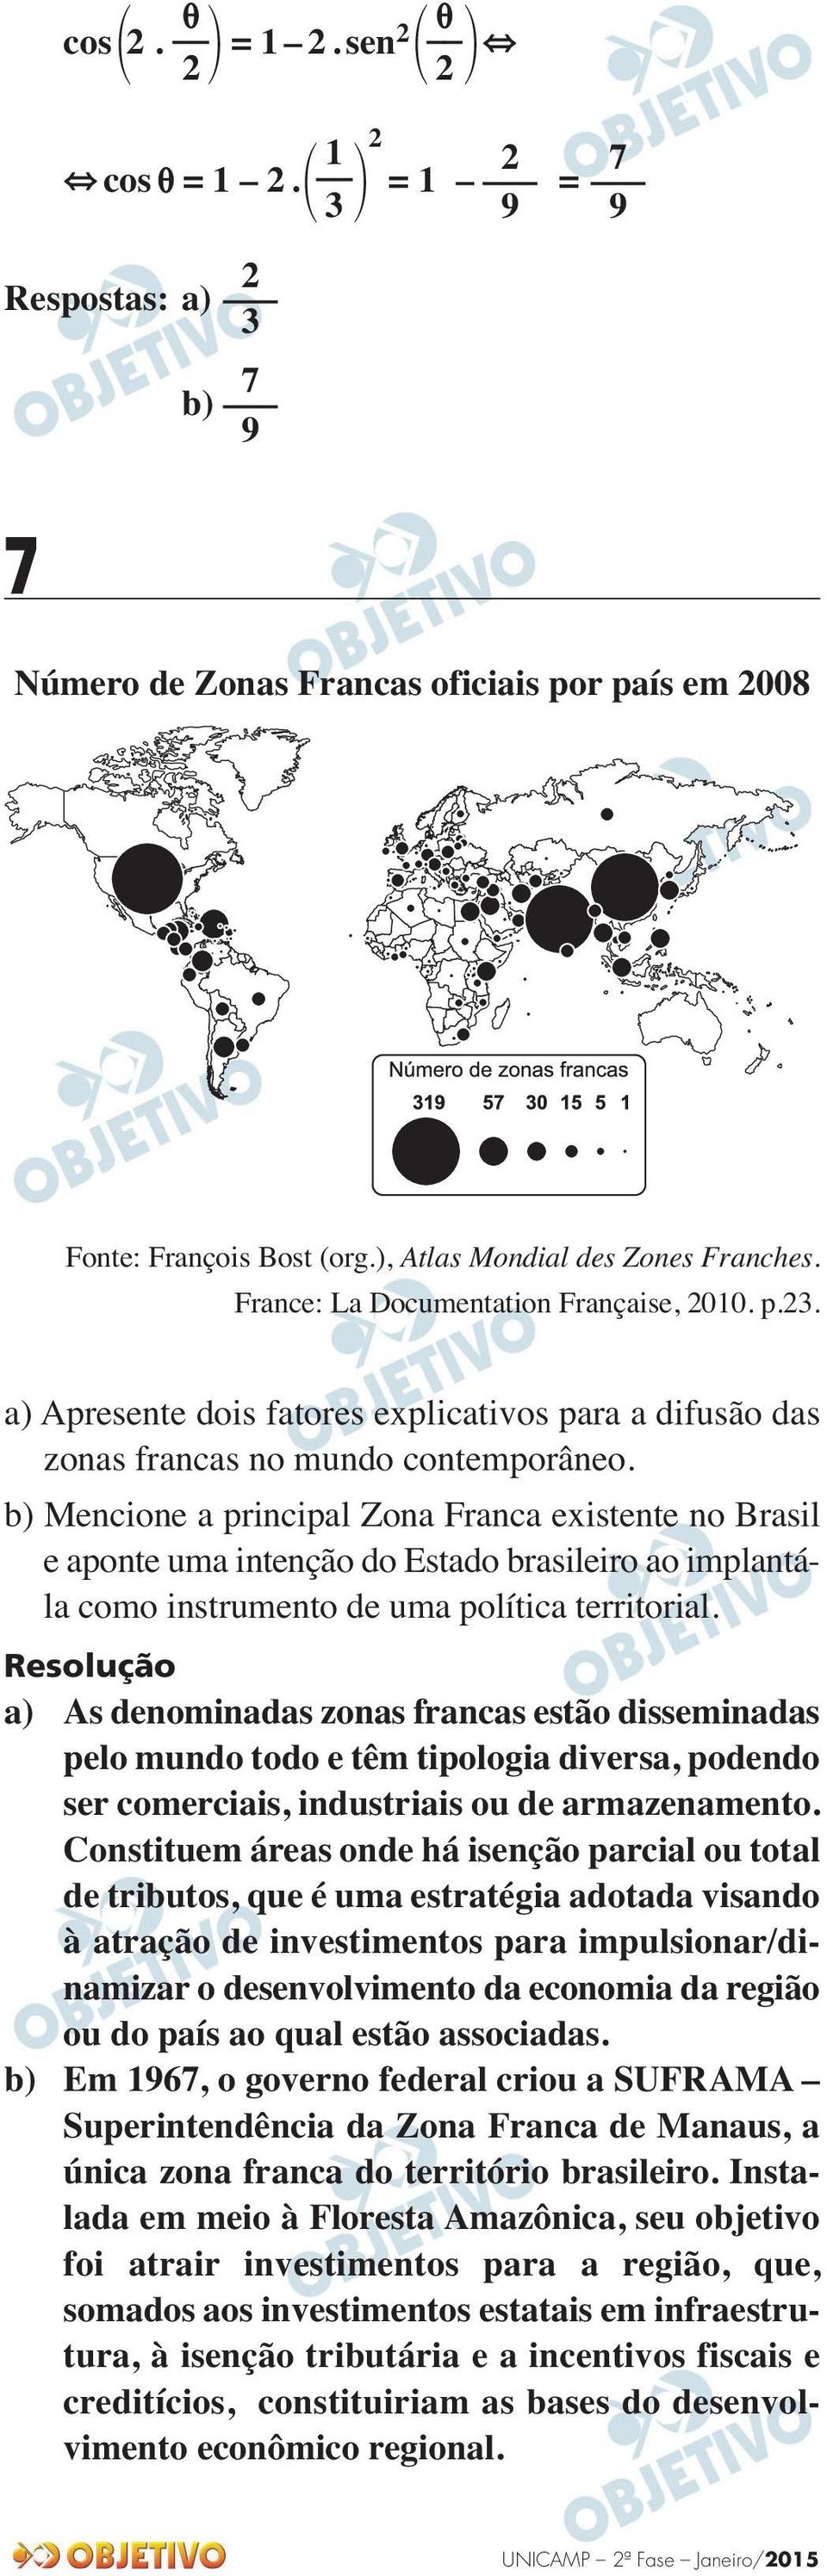 b) Mencione a principal Zona Franca existente no Brasil e aponte uma intenção do Estado brasileiro ao implantála como instrumento de uma política territorial.